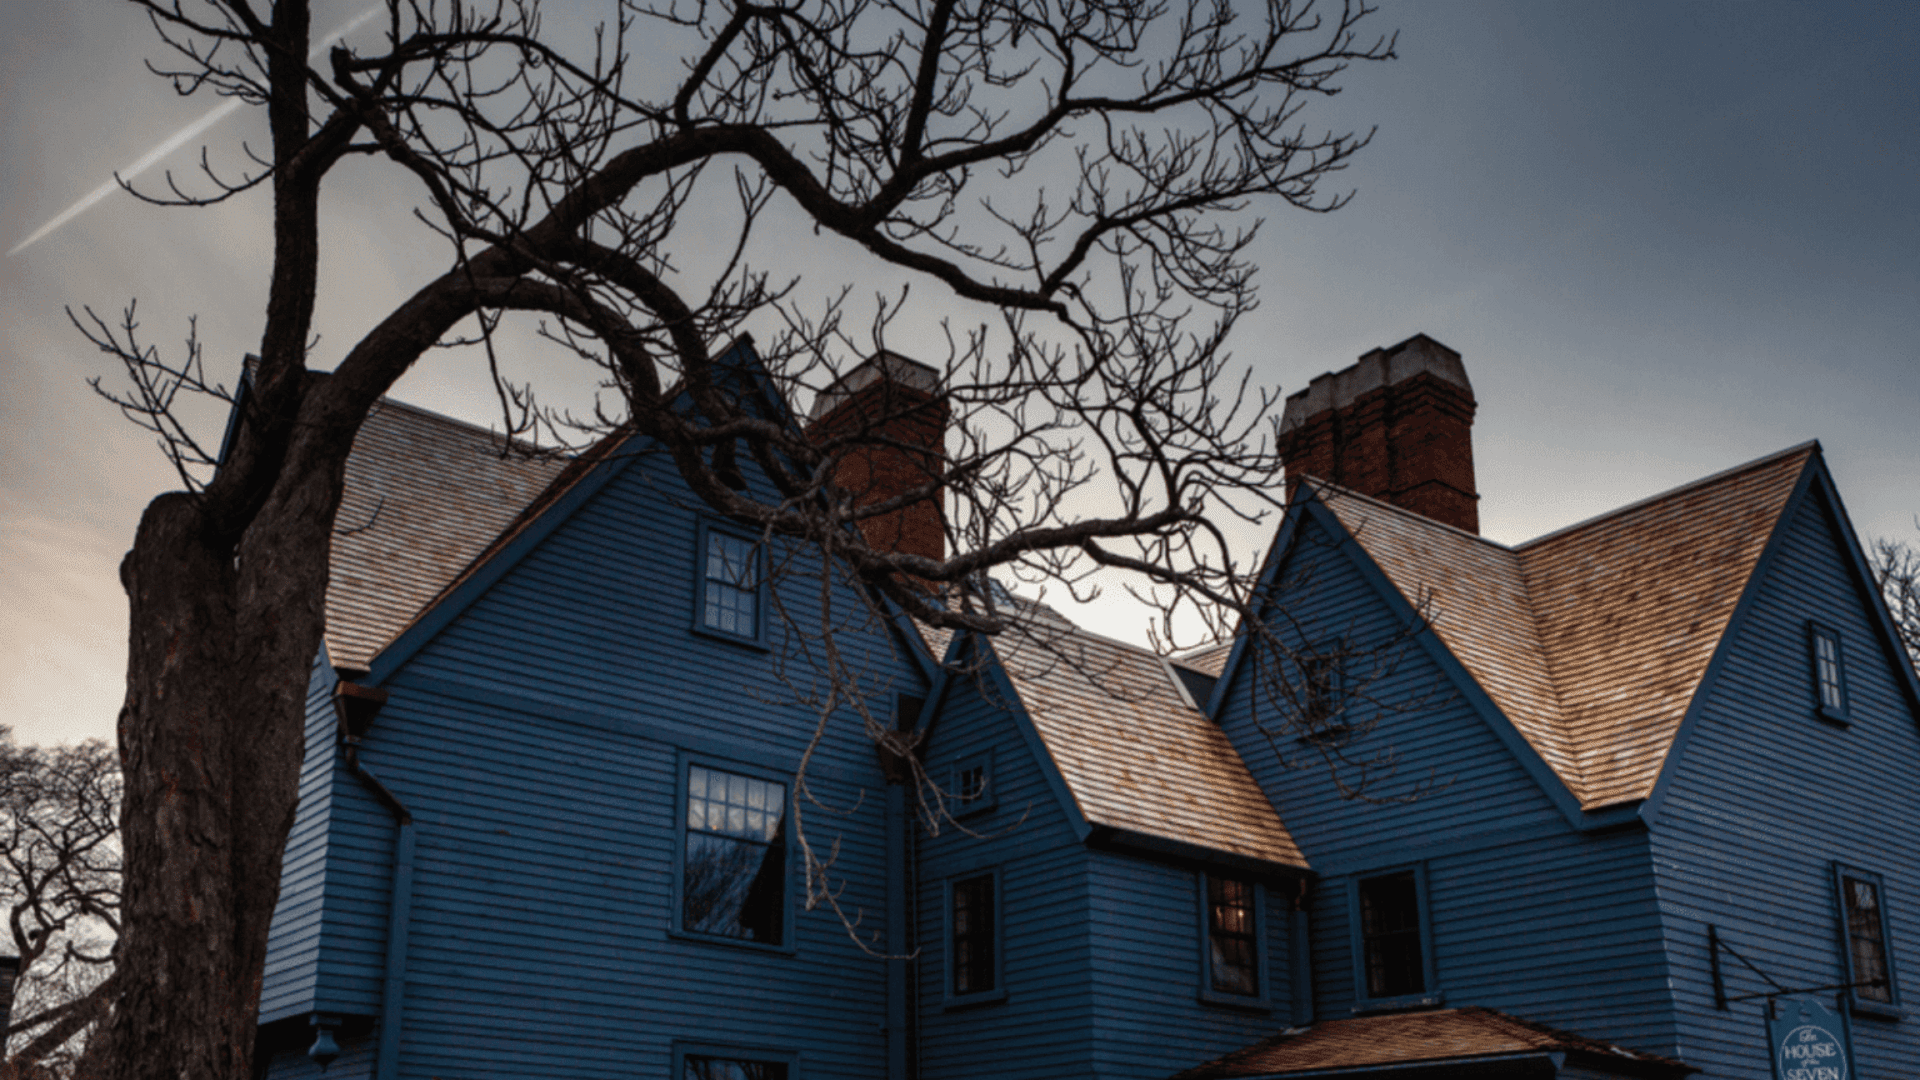 House-of-the-Seven-Gables-Salem-Massachusetts-1536x864